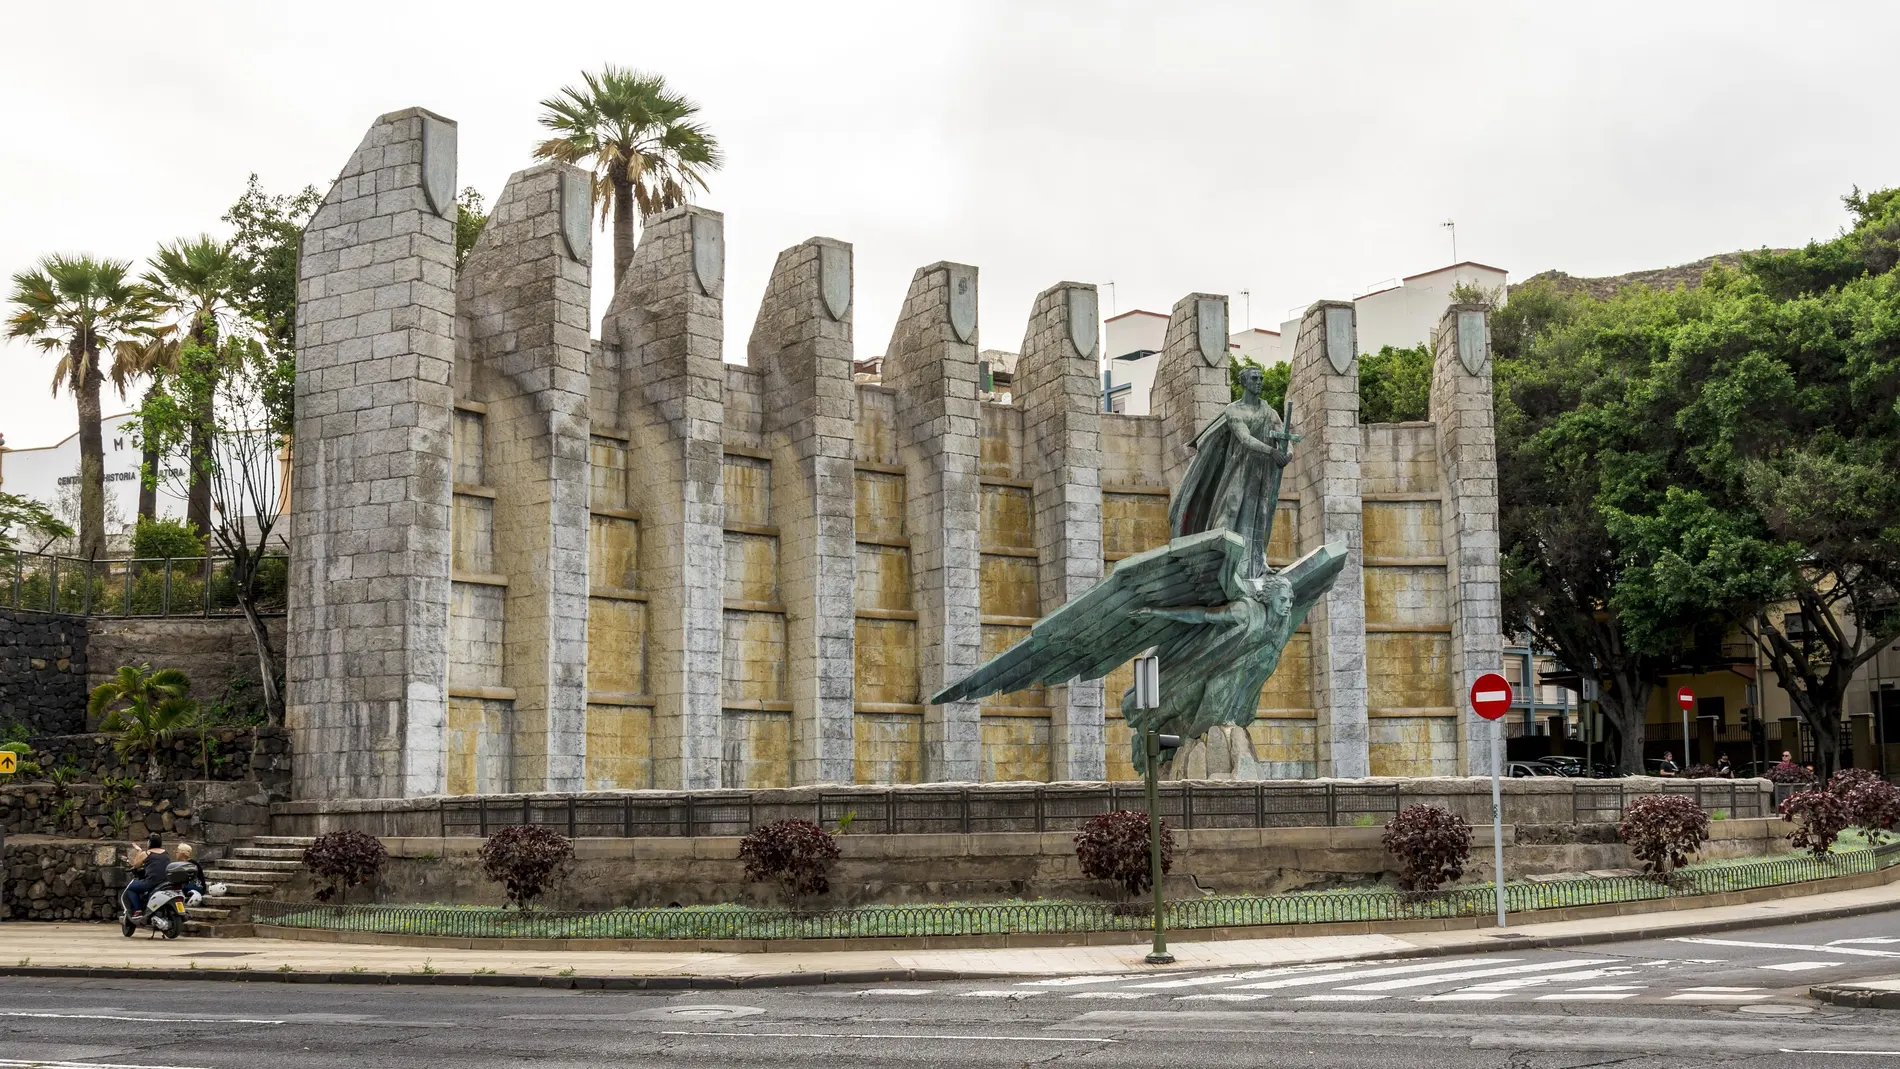 El monumento obra de Juan de Ávalos, escultor del Valle de los Caídos, en Santa Cruz de Tenerife